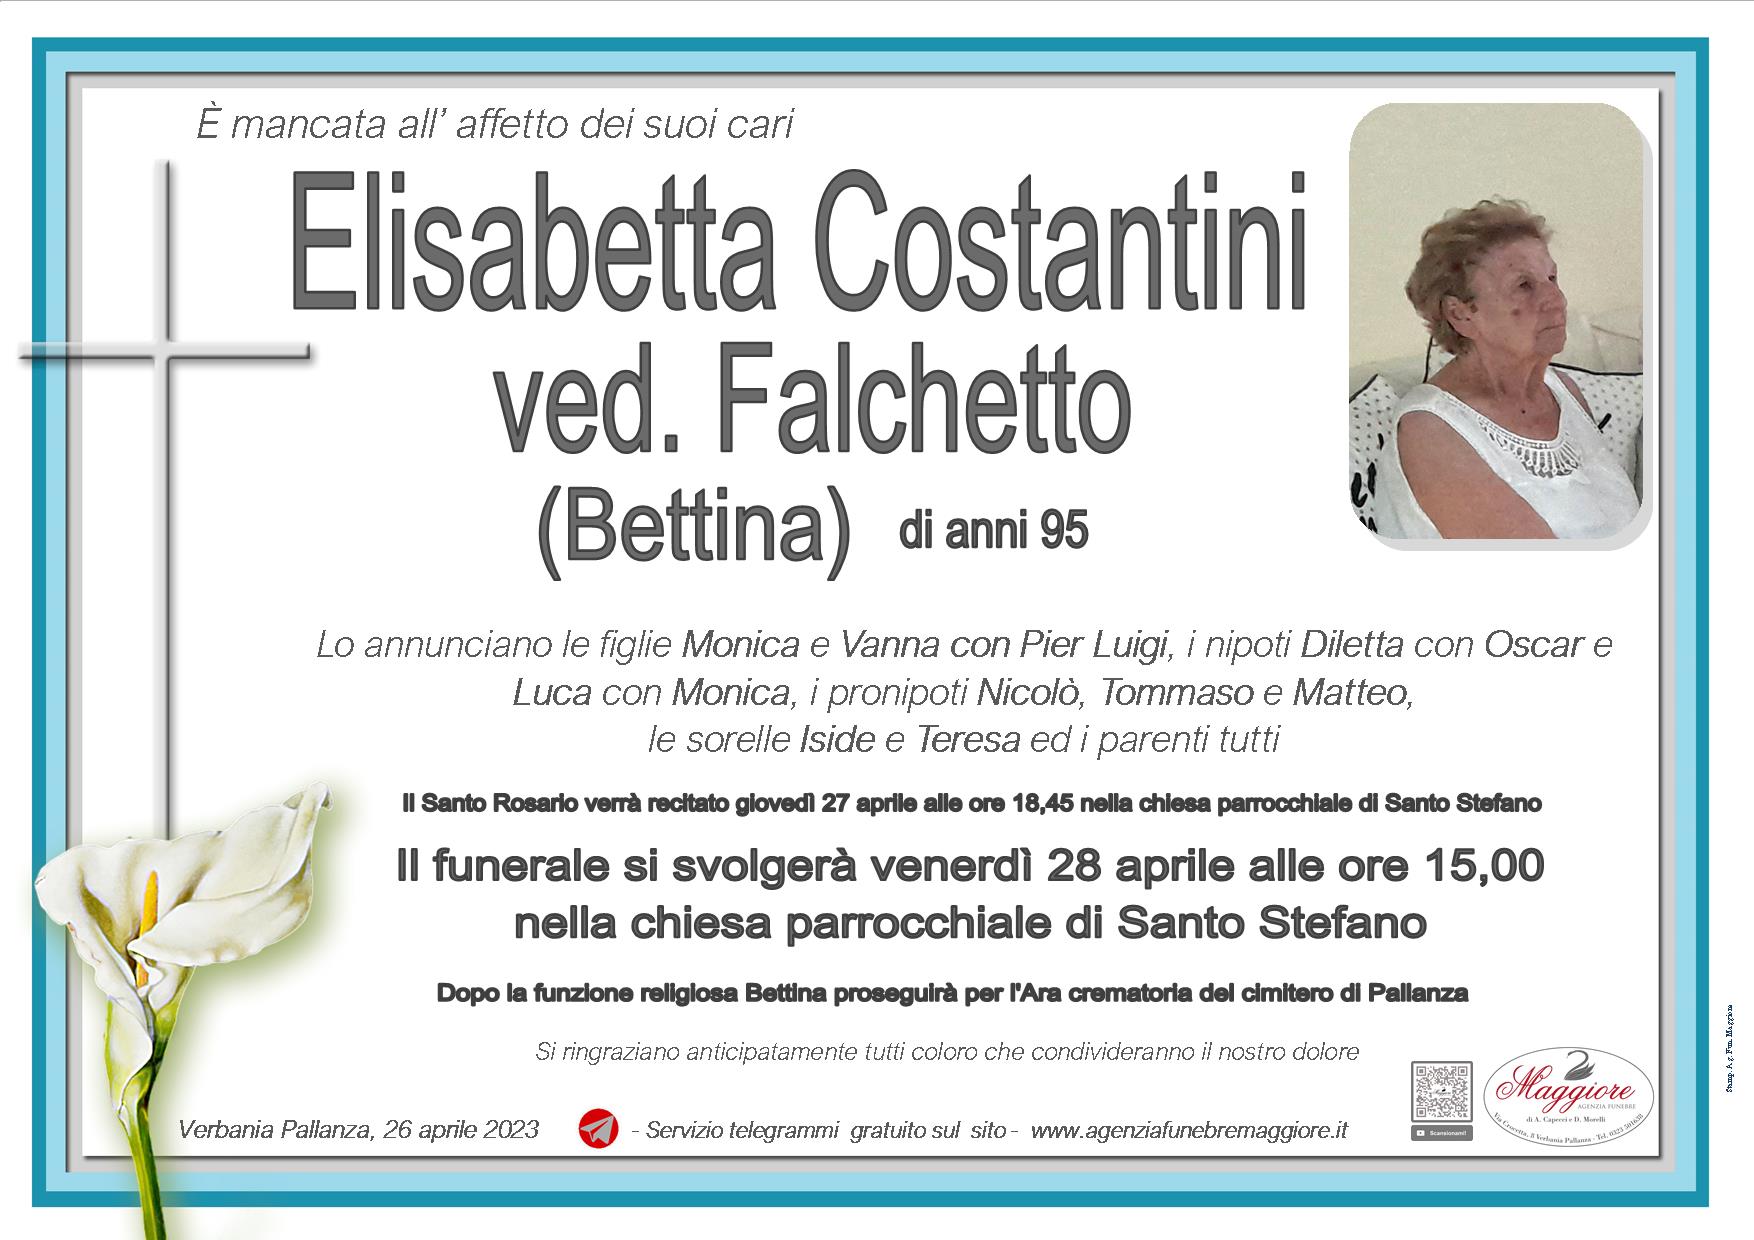 Elisabetta Costantini ved. Falchetto